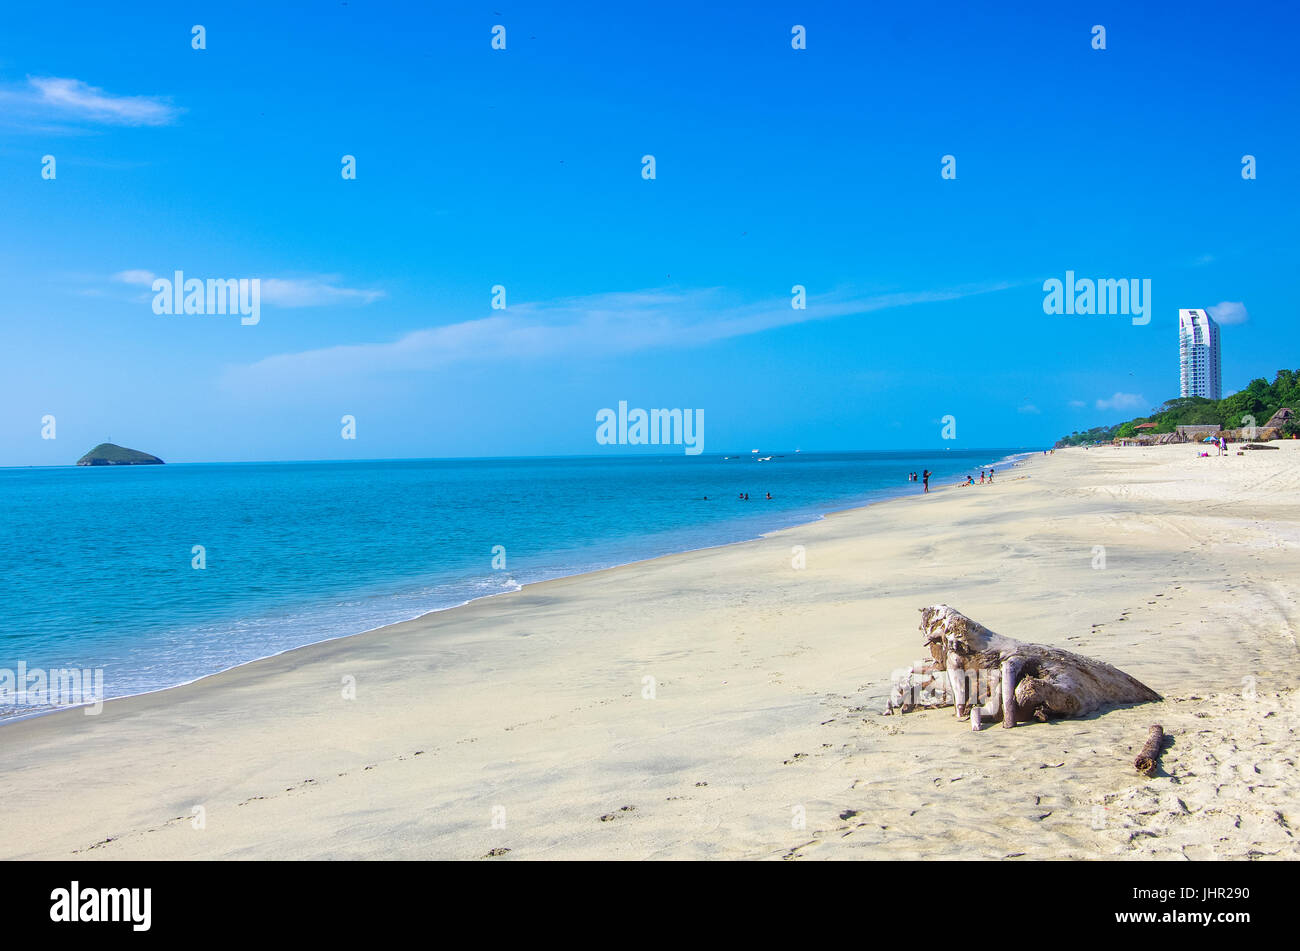 Santa Clara, arena blanca y la subida de la imagen de fondo adoptadas en Panamá Foto de stock